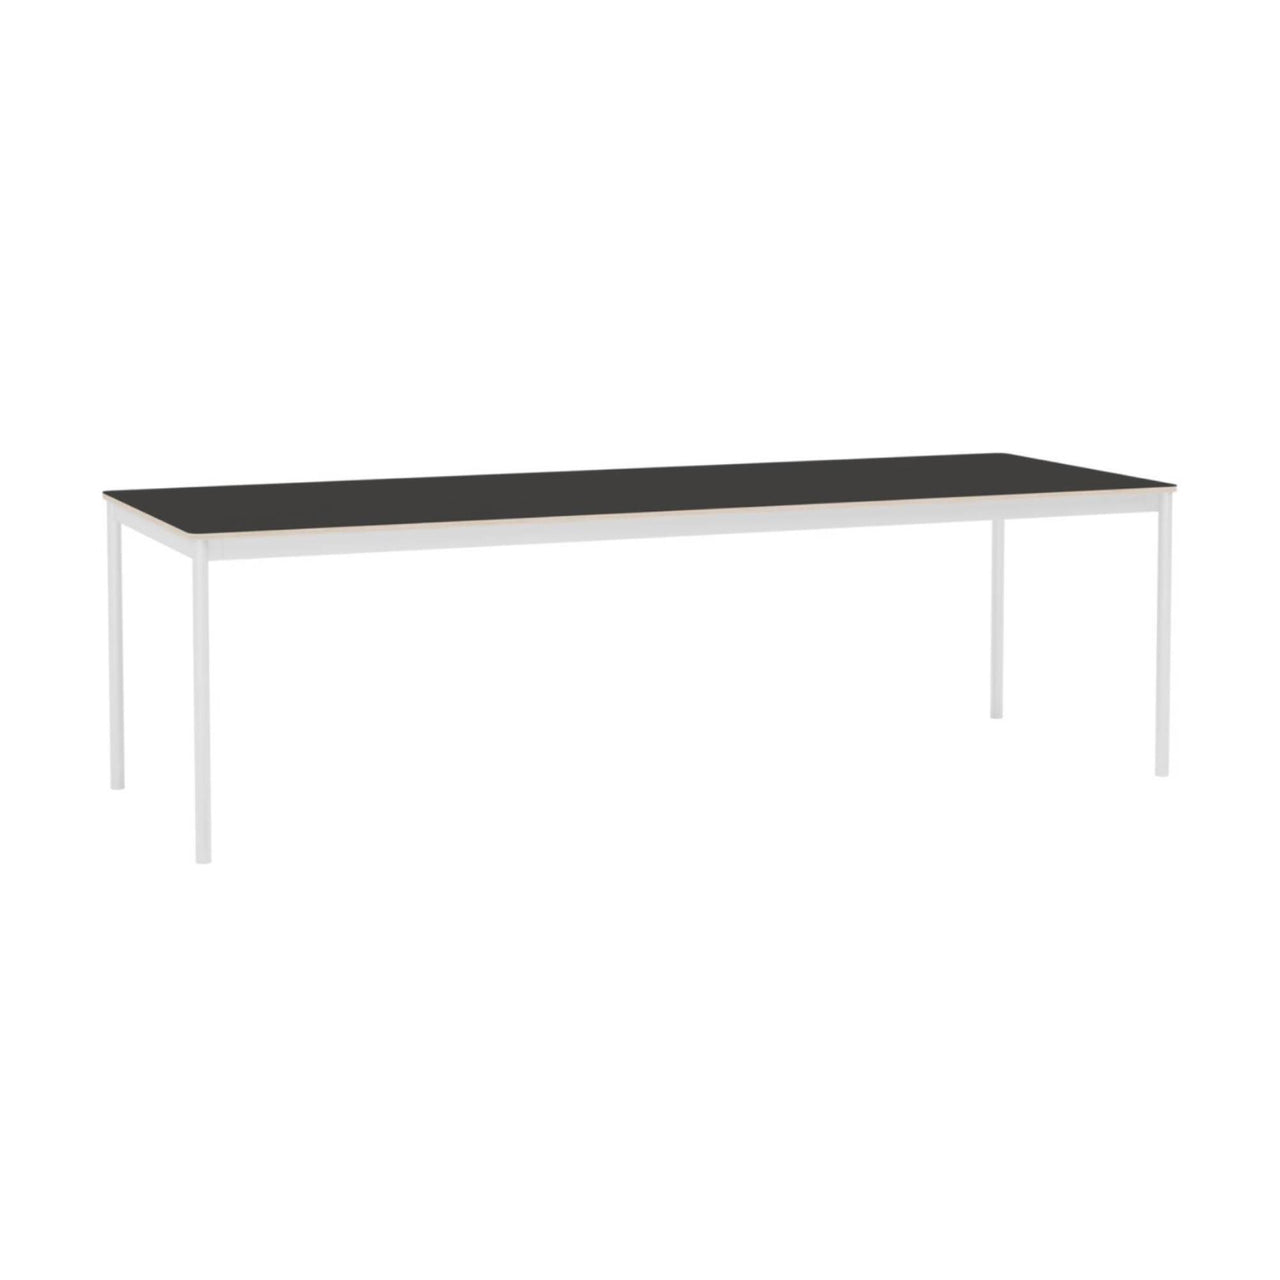 Base Table: Large + Black Linoleum + Plywood Edge + White